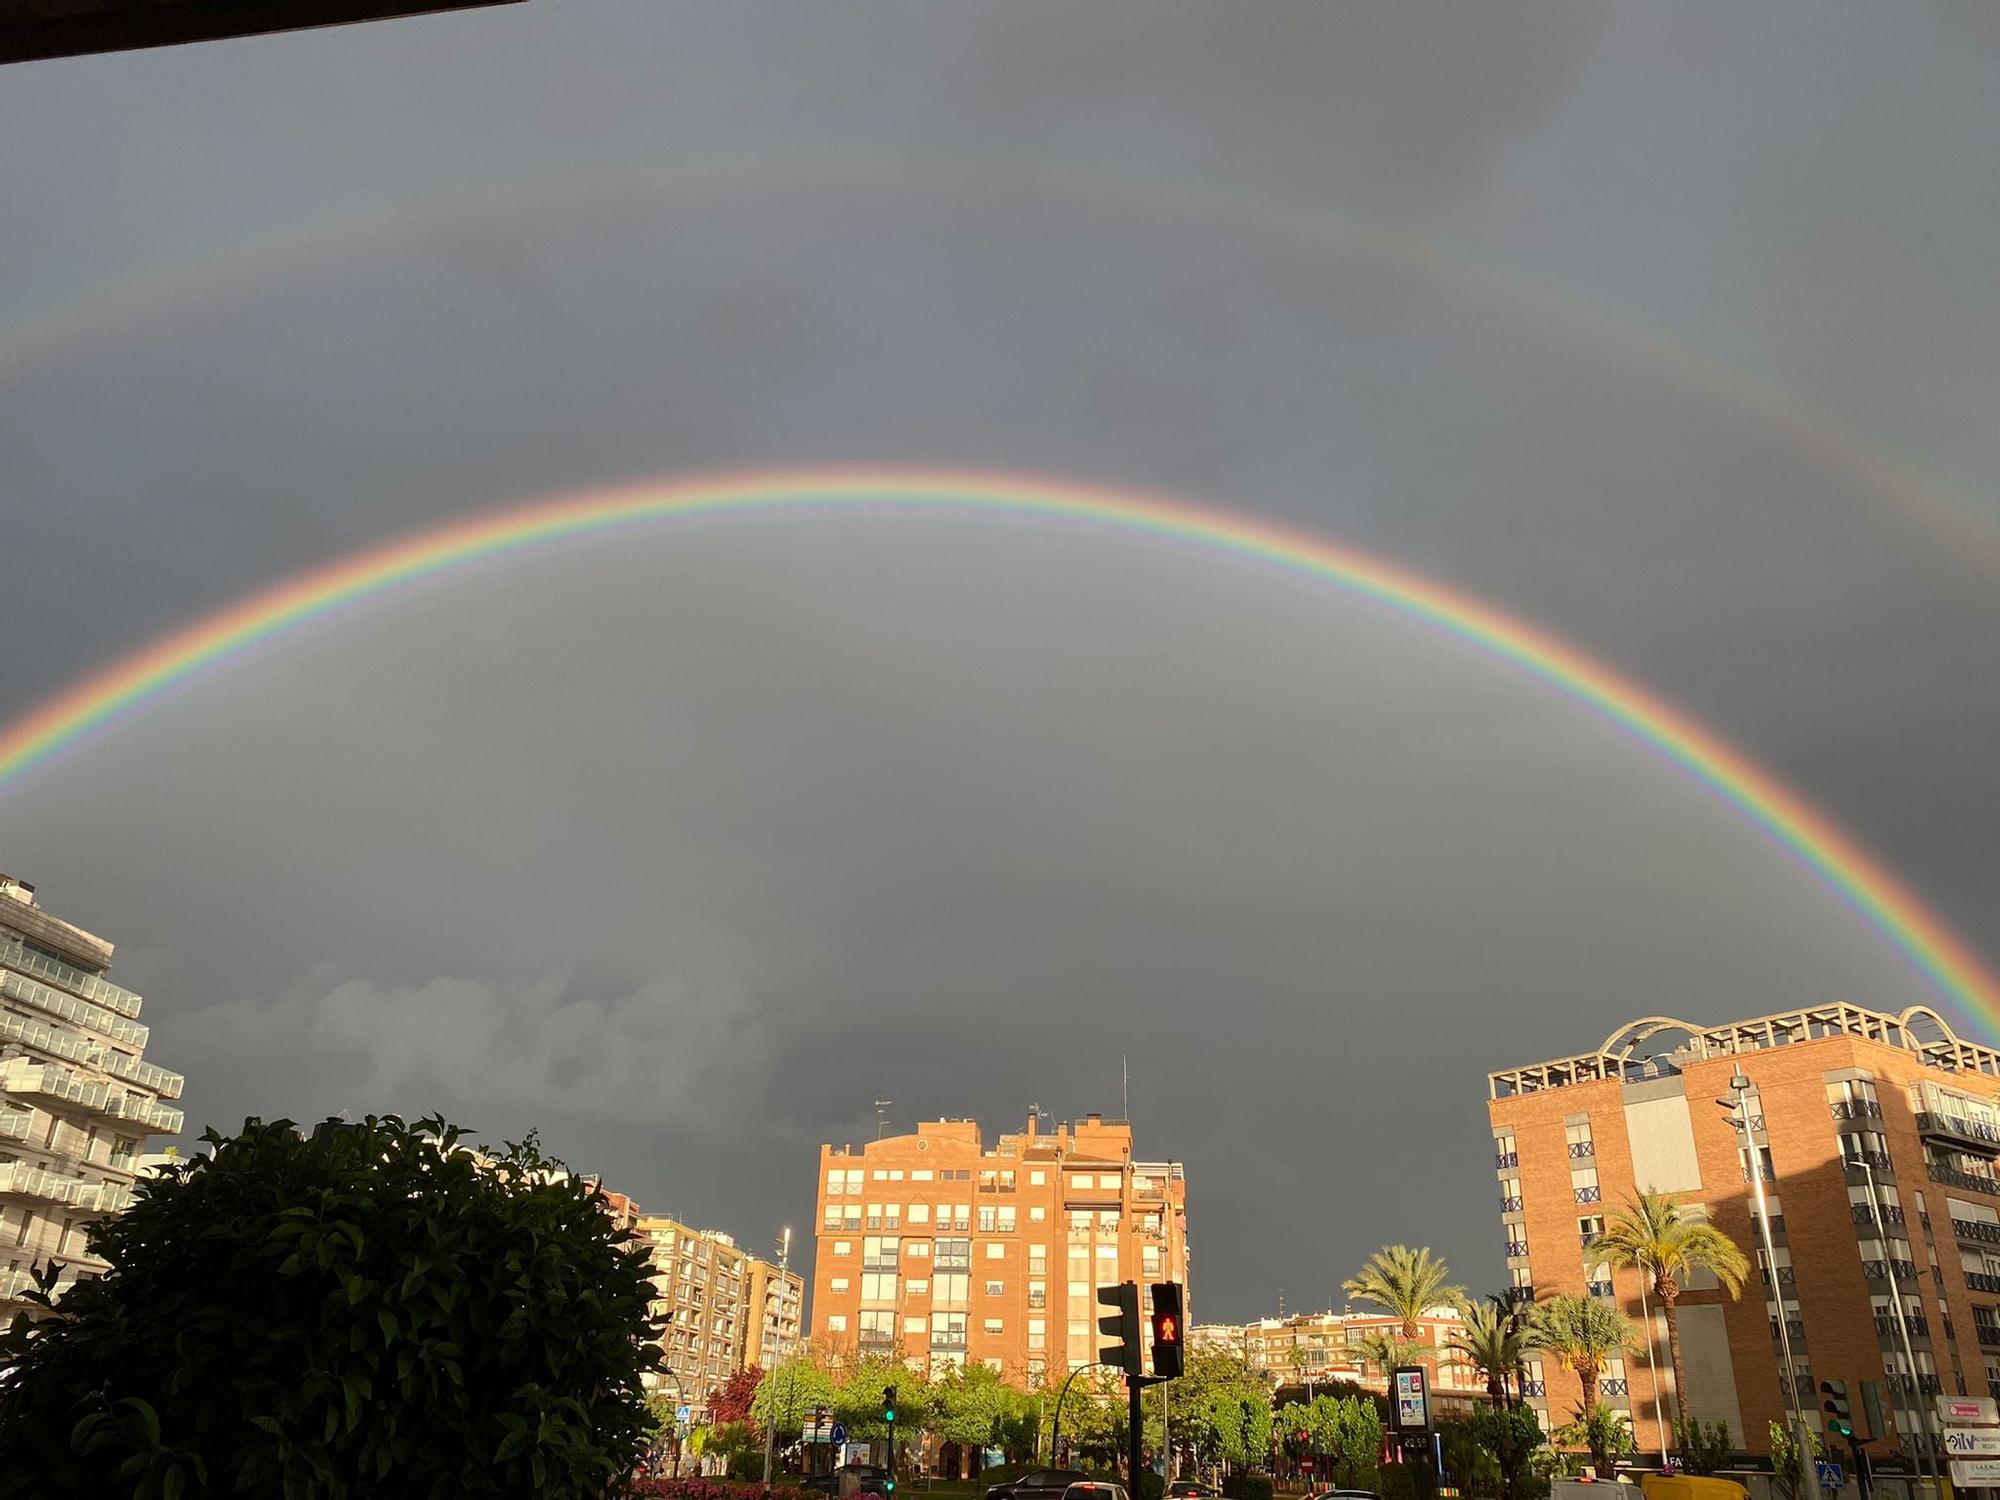 El espectacular arcoíris que ha surcado el cielo de Murcia esta tarde